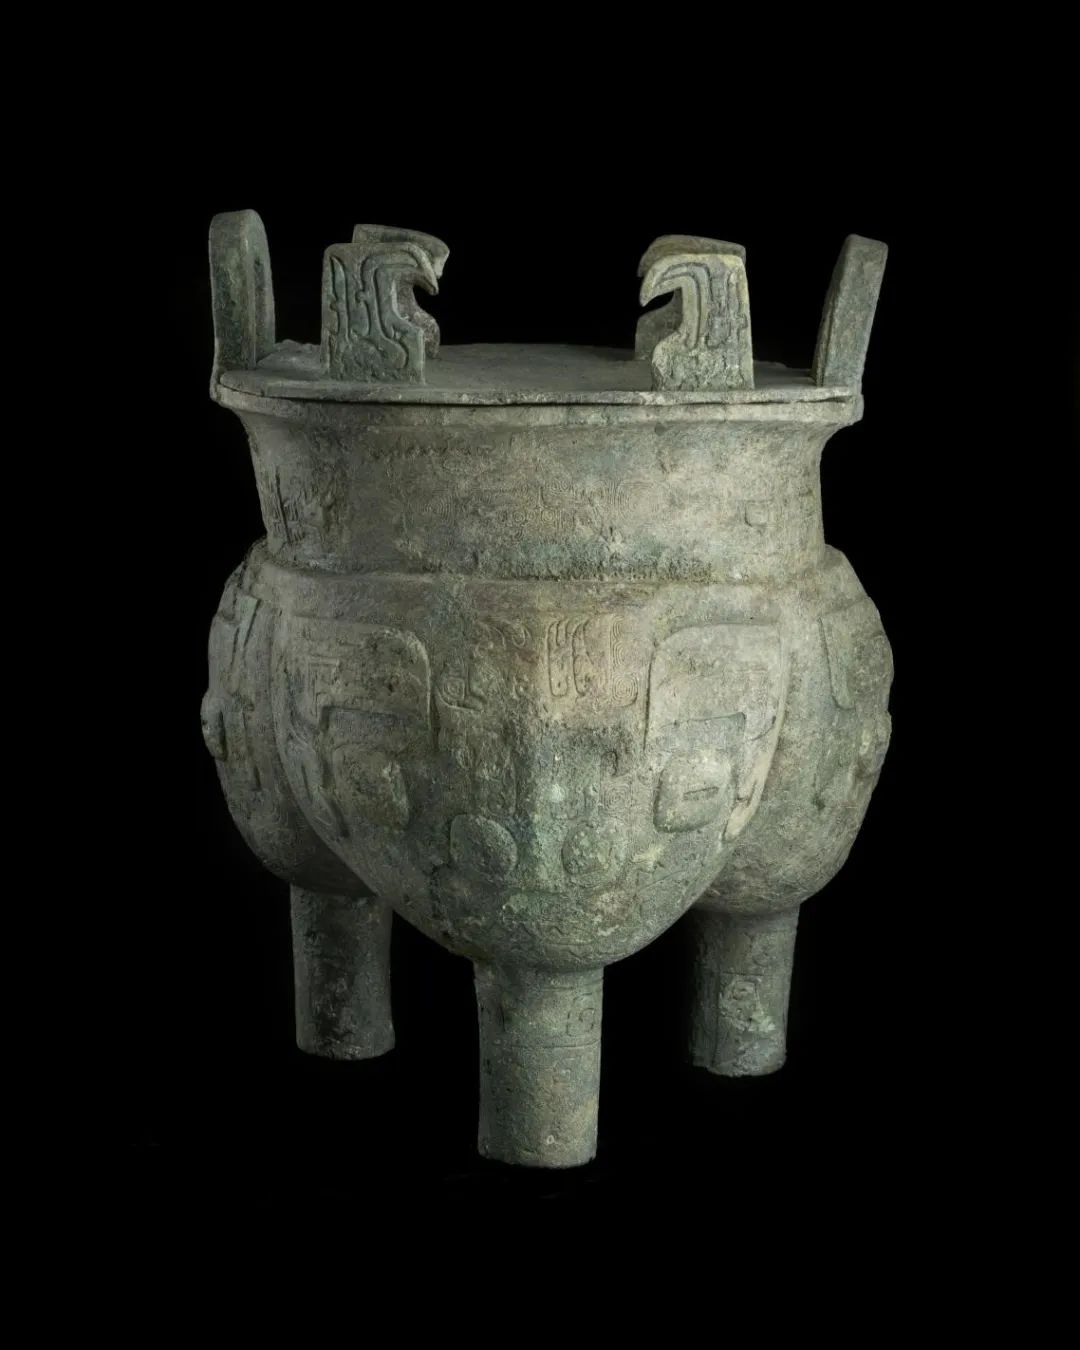 鬲 出土地点：天马-曲村晋侯墓地M114 年代：西周早期 收藏单位：北京大学赛克勒考古与艺术博物馆